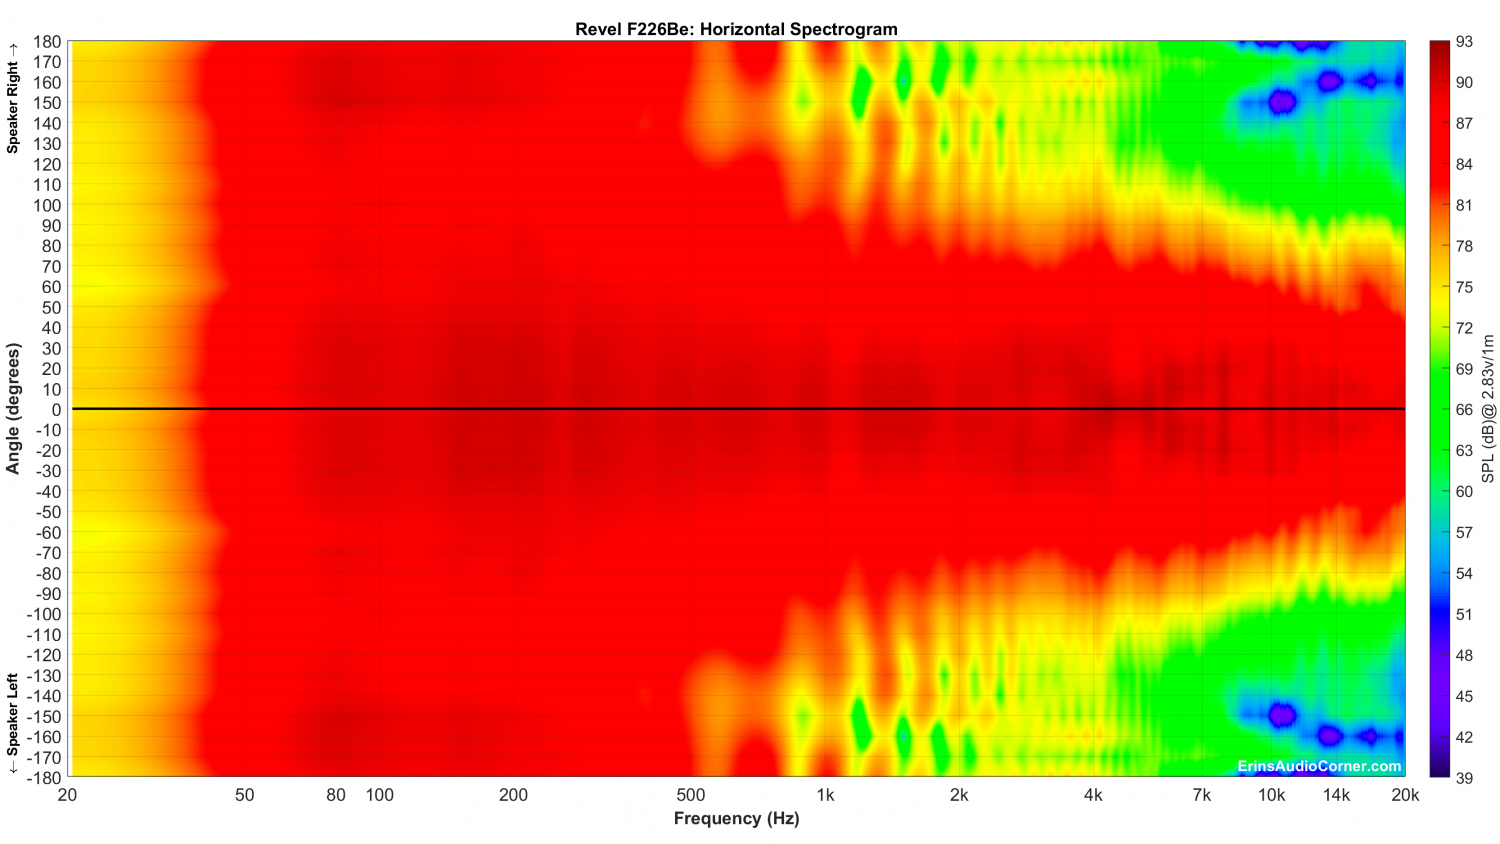 Revel F226Be_Horizontal_Spectrogram_Full.png